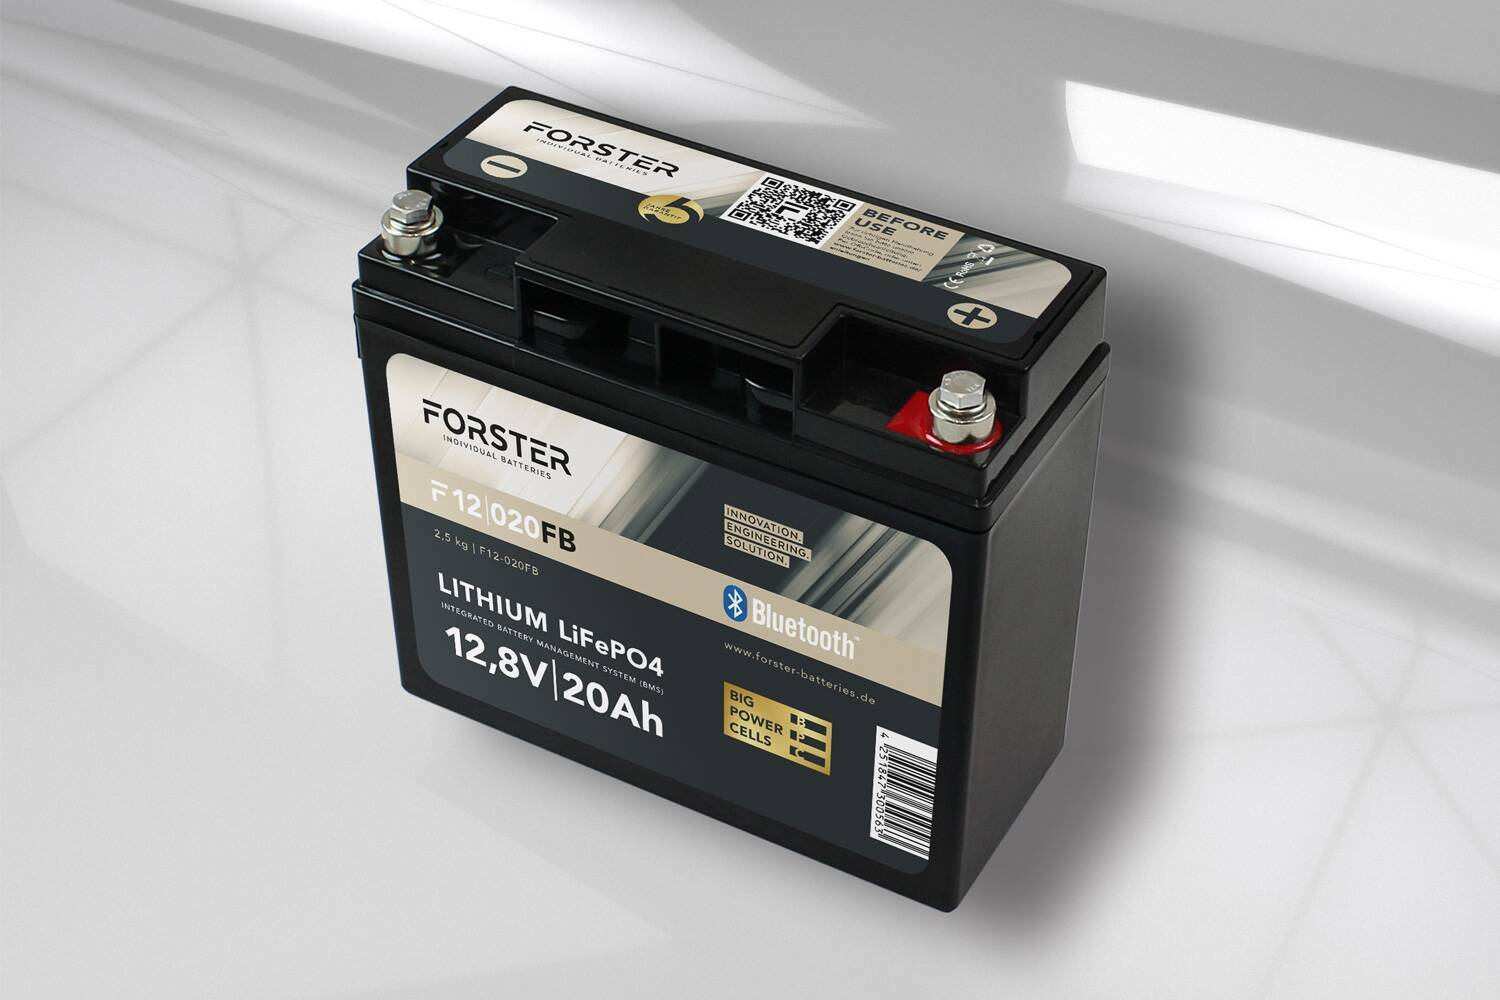 Forster 20Ah 12.8V Lithium Fishing Battery | BMS | Smart Bluetooh | IP67